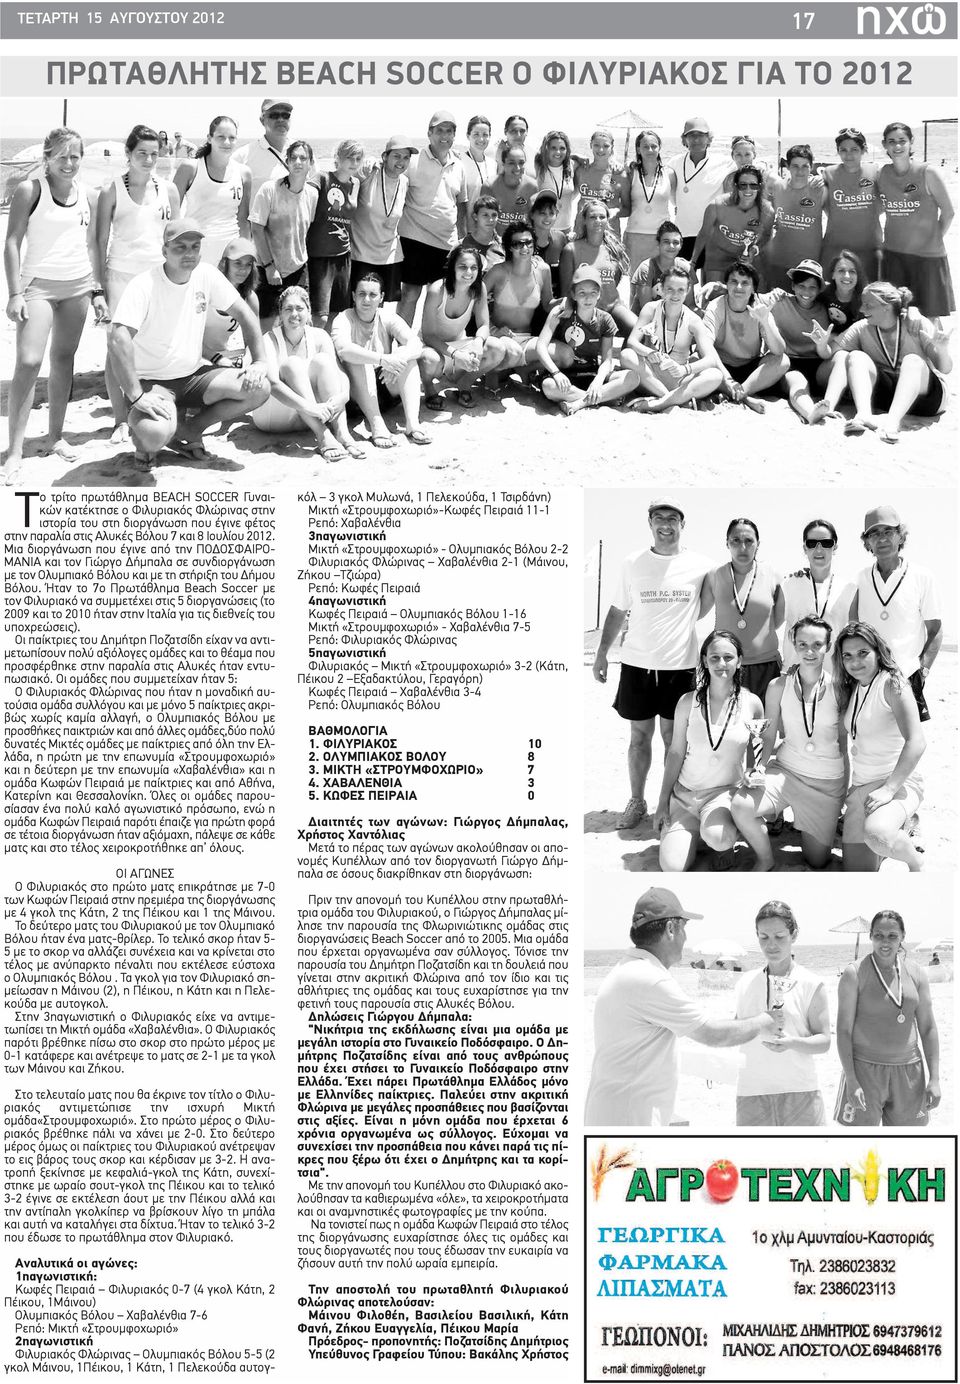 Ήταν το 7ο Πρωτάθλημα Beach Soccer με τον Φιλυριακό να συμμετέχει στις 5 διοργανώσεις (το 2009 και το 2010 ήταν στην Ιταλία για τις διεθνείς του υποχρεώσεις).